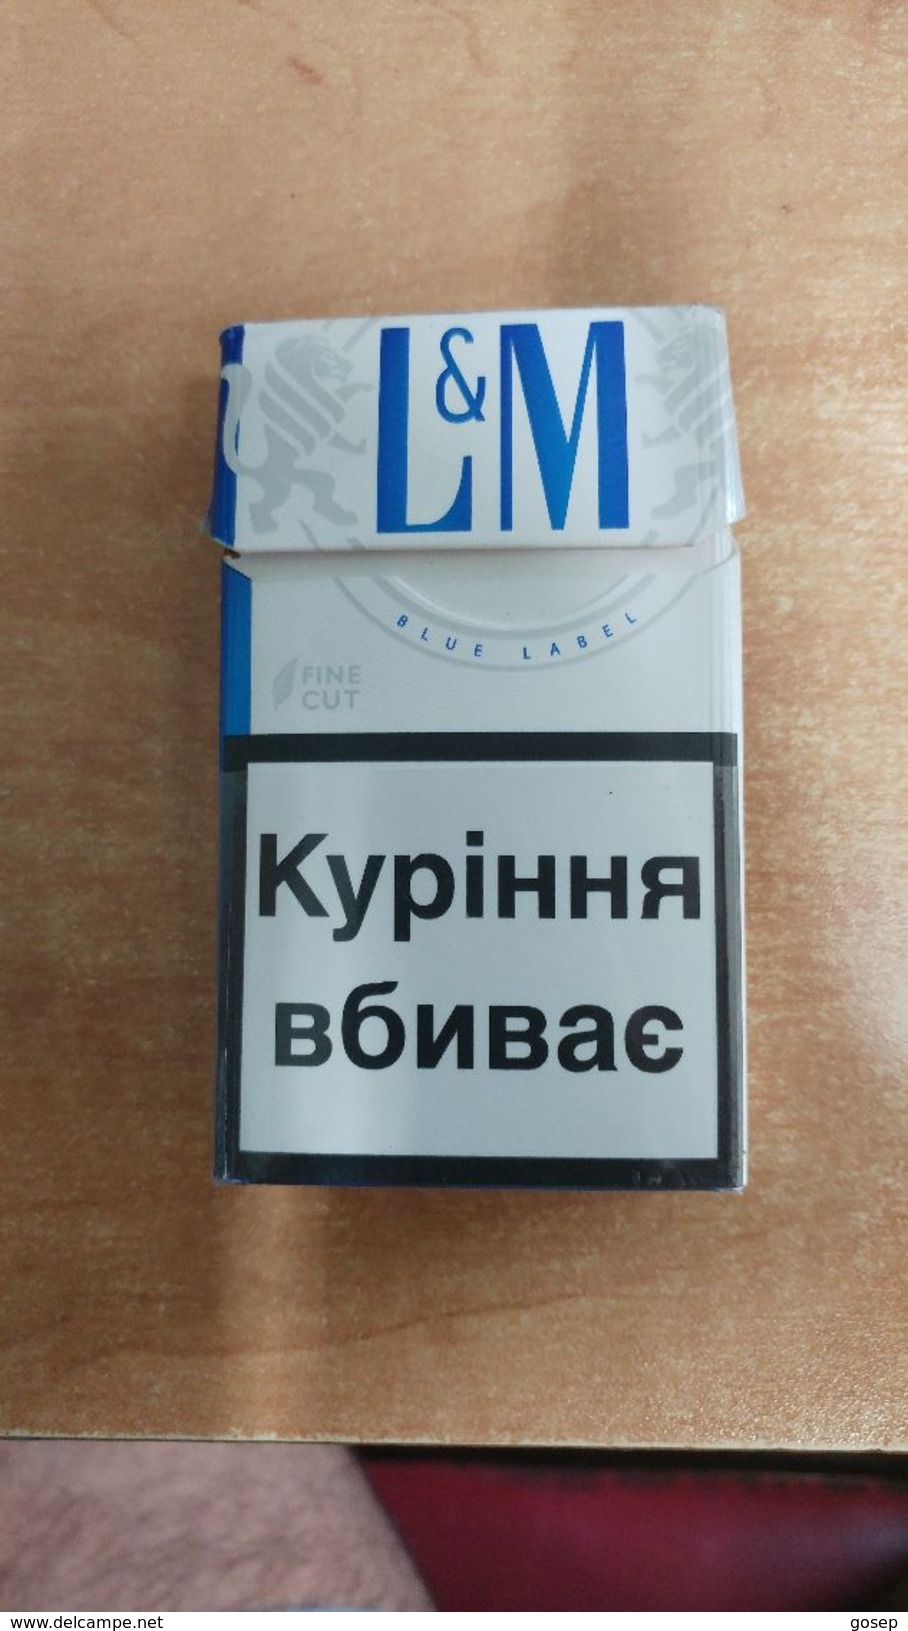 Boxes-israel-box Empty Cigarette-L&M-blue Label-(37) - Empty Cigarettes Boxes